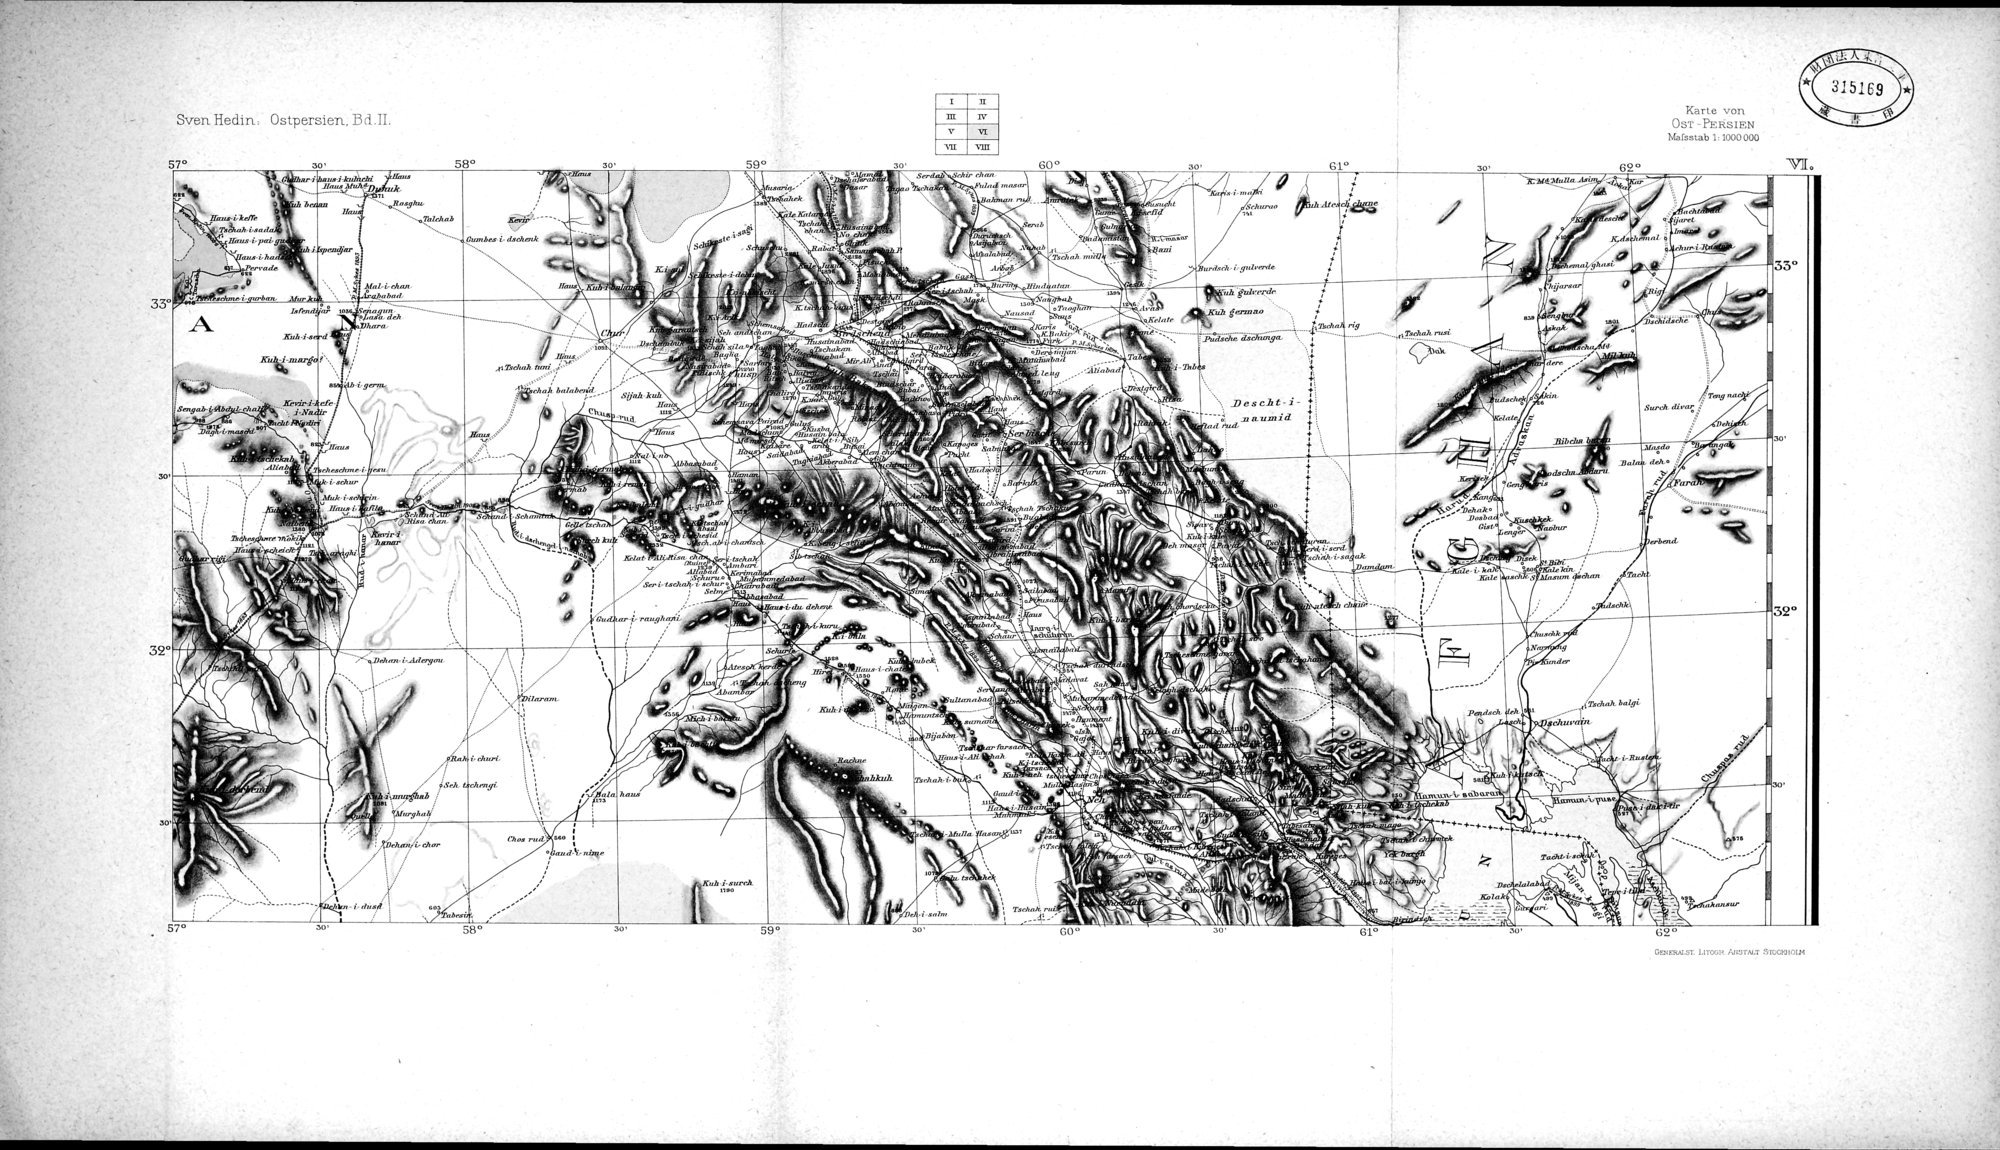 Eine Routenaufnahme durch Ostpersien : vol.3 / Page 4 (Grayscale High Resolution Image)